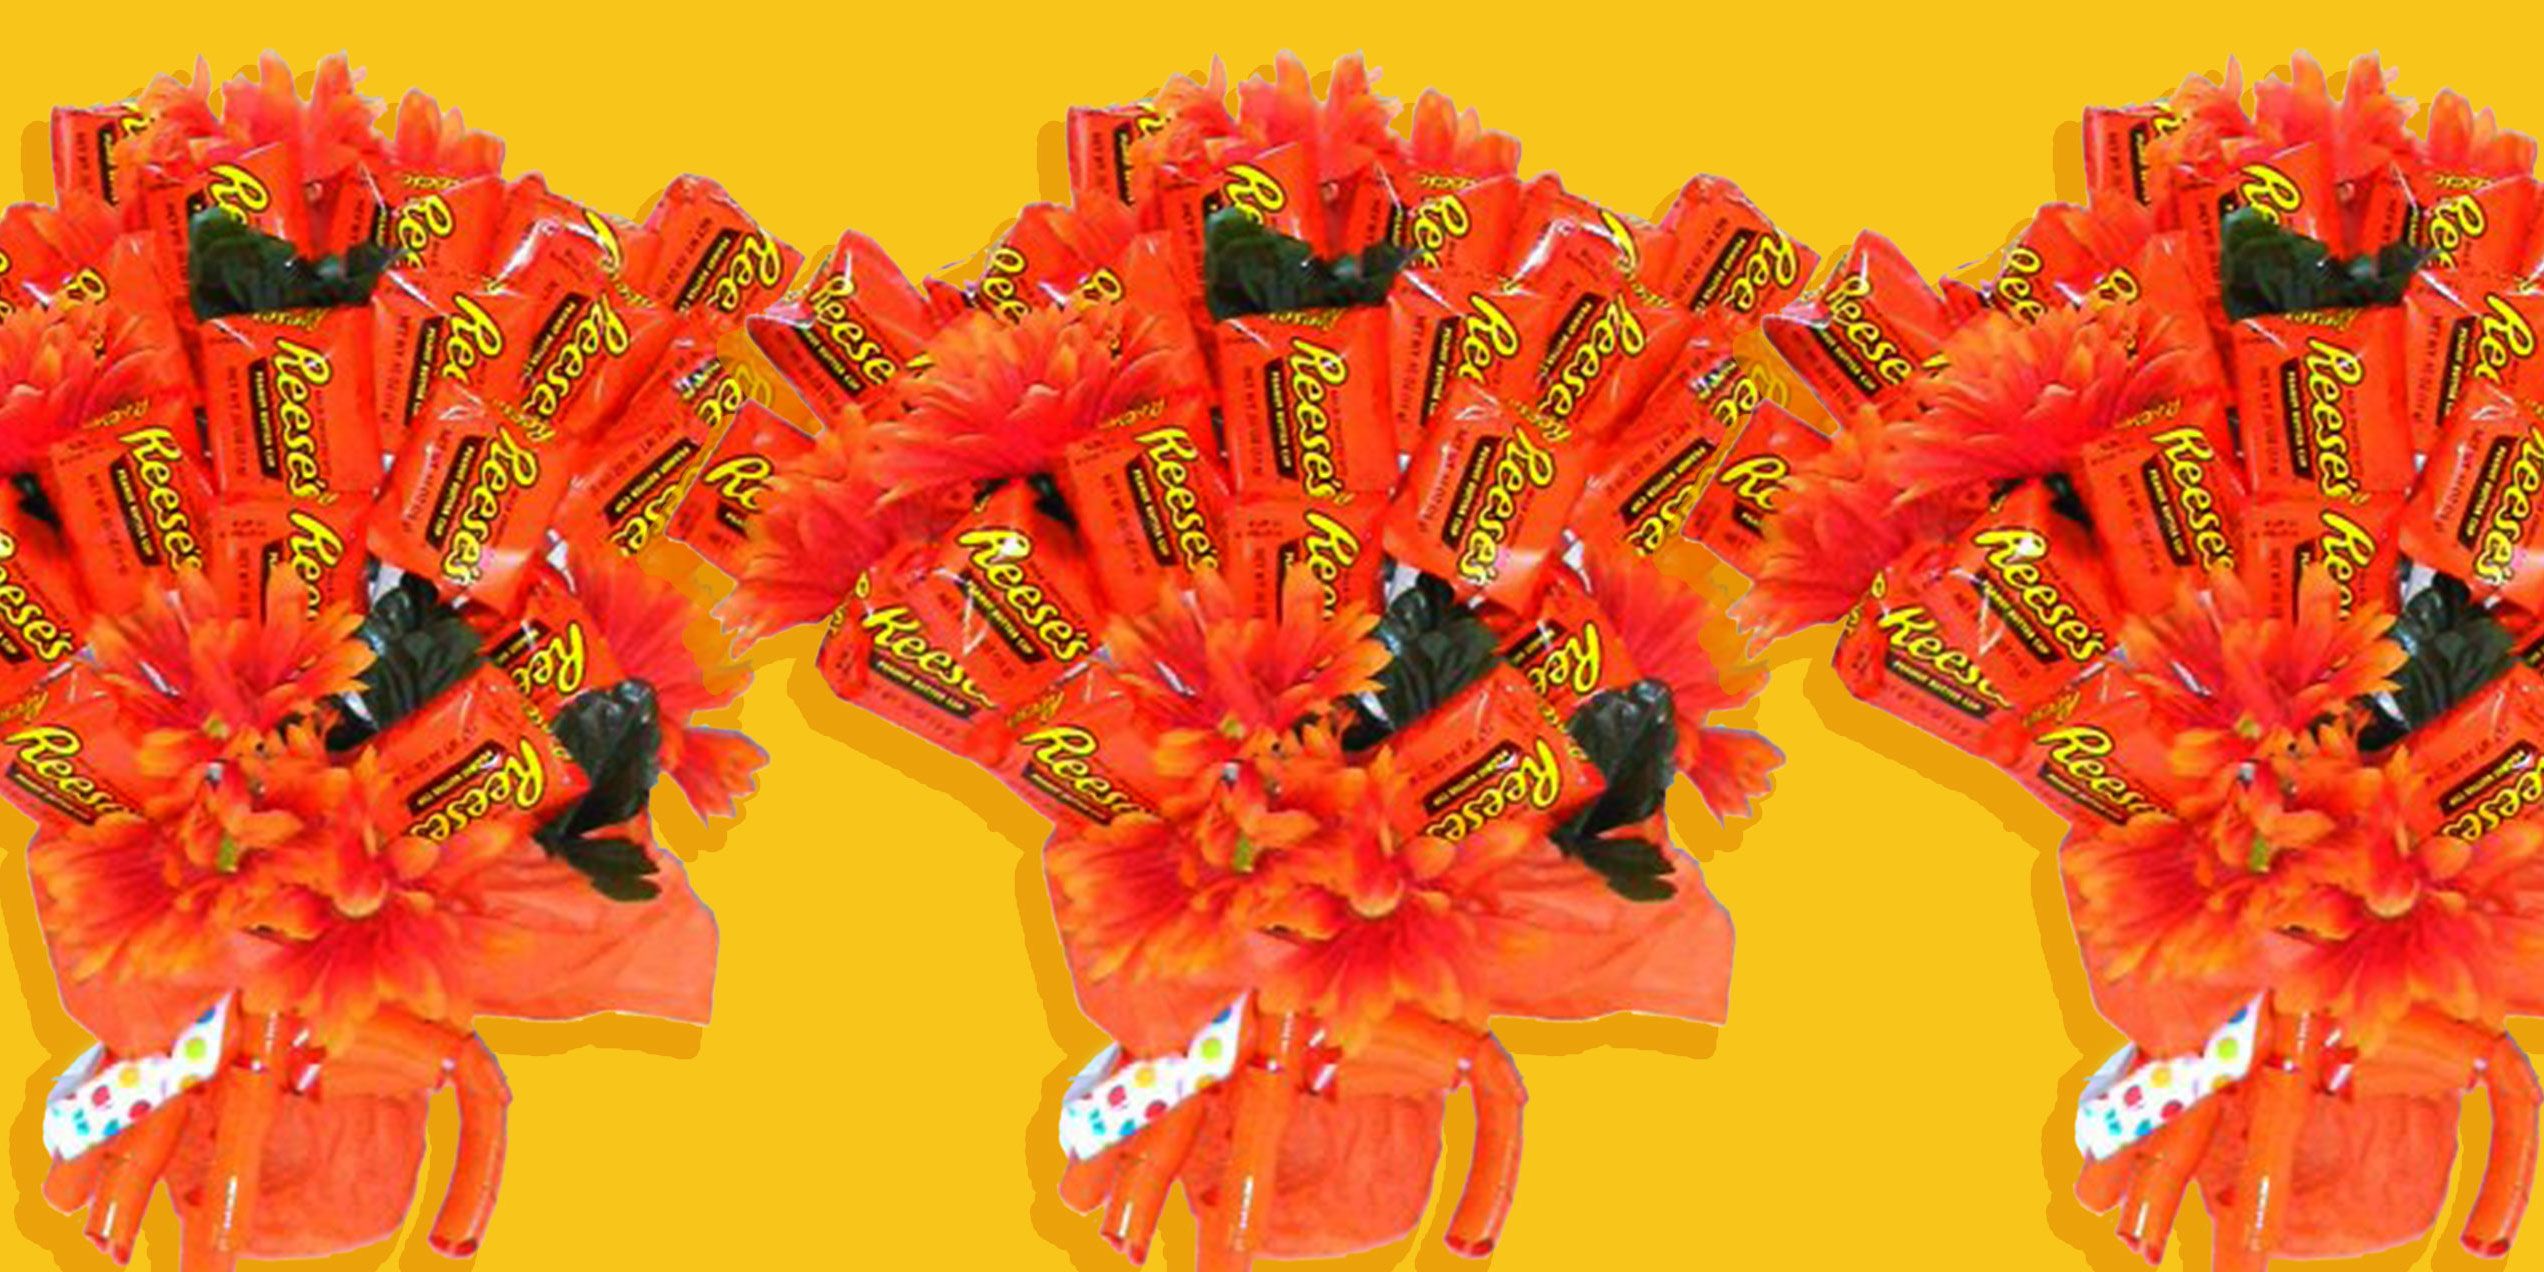 Peanut Butter M&M's Candy Bouquet